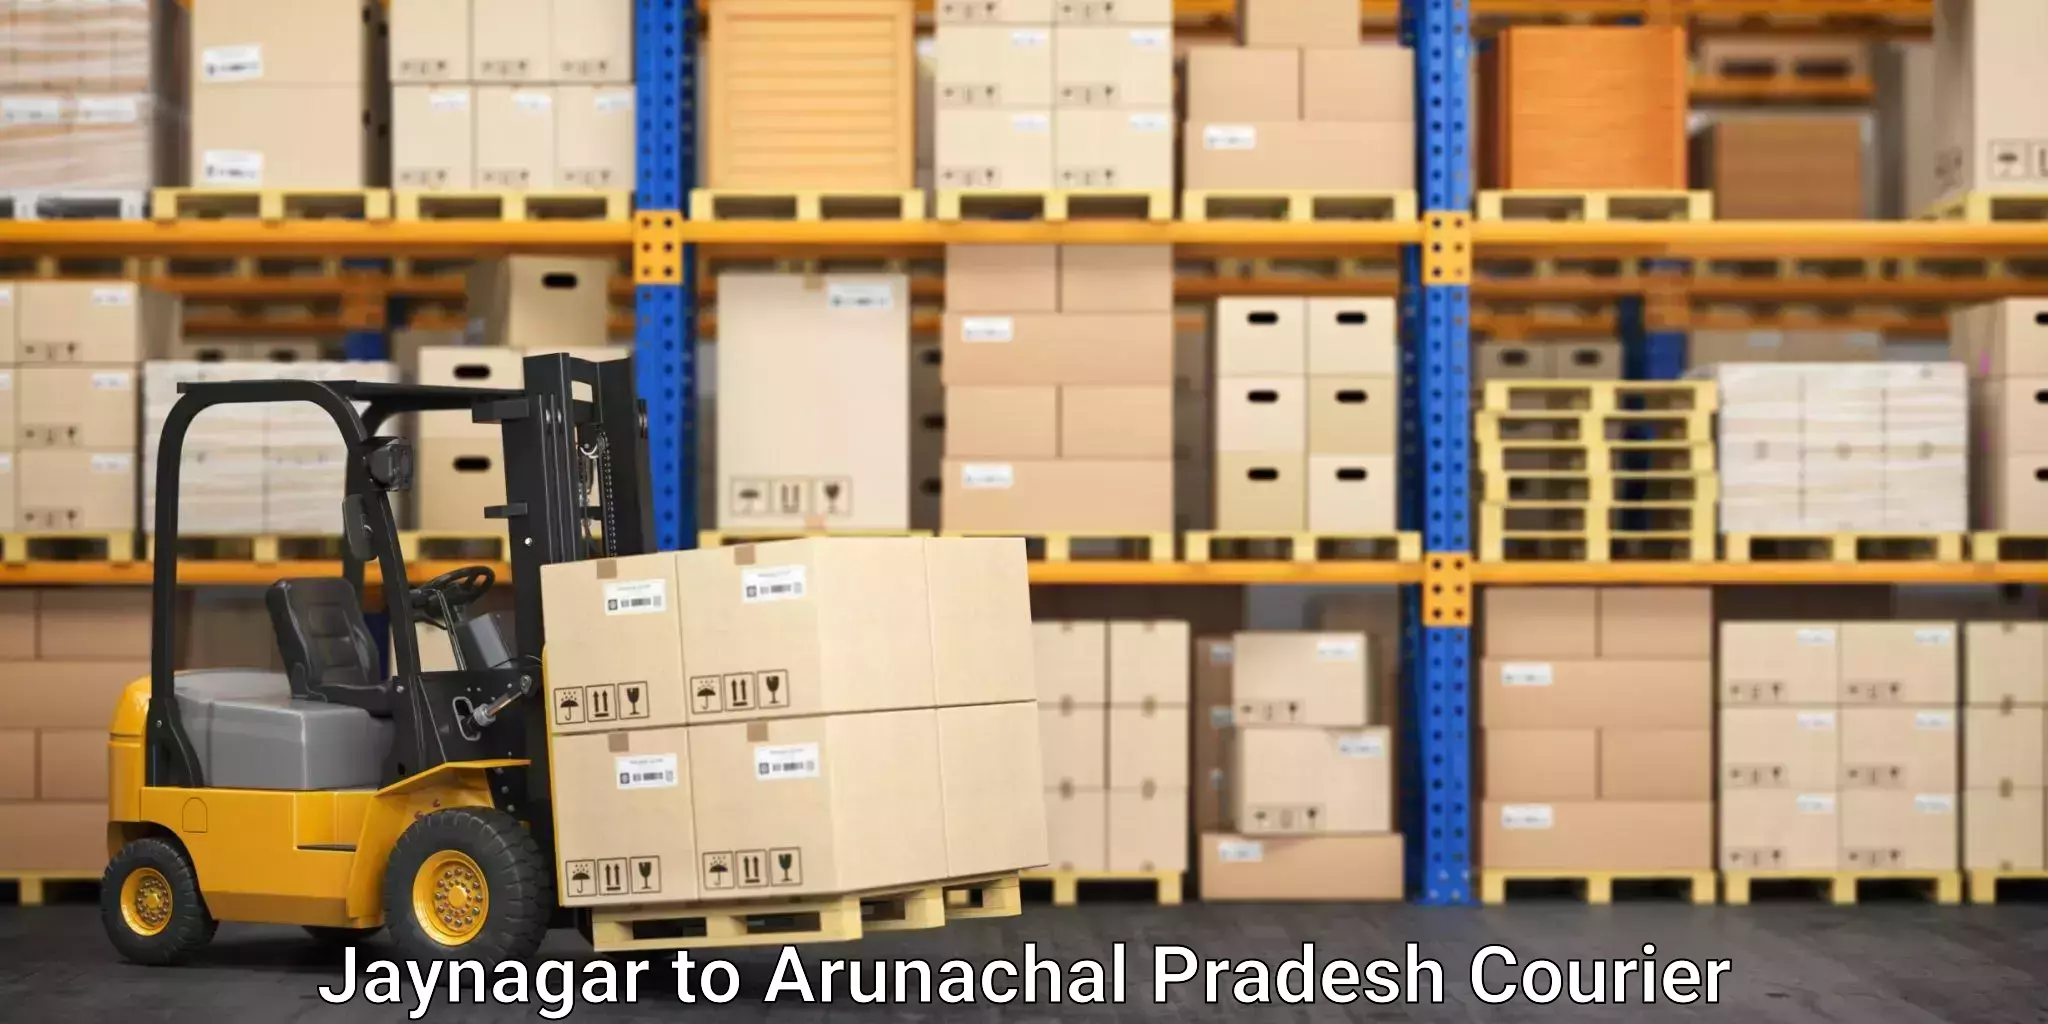 Furniture moving experts Jaynagar to Arunachal Pradesh